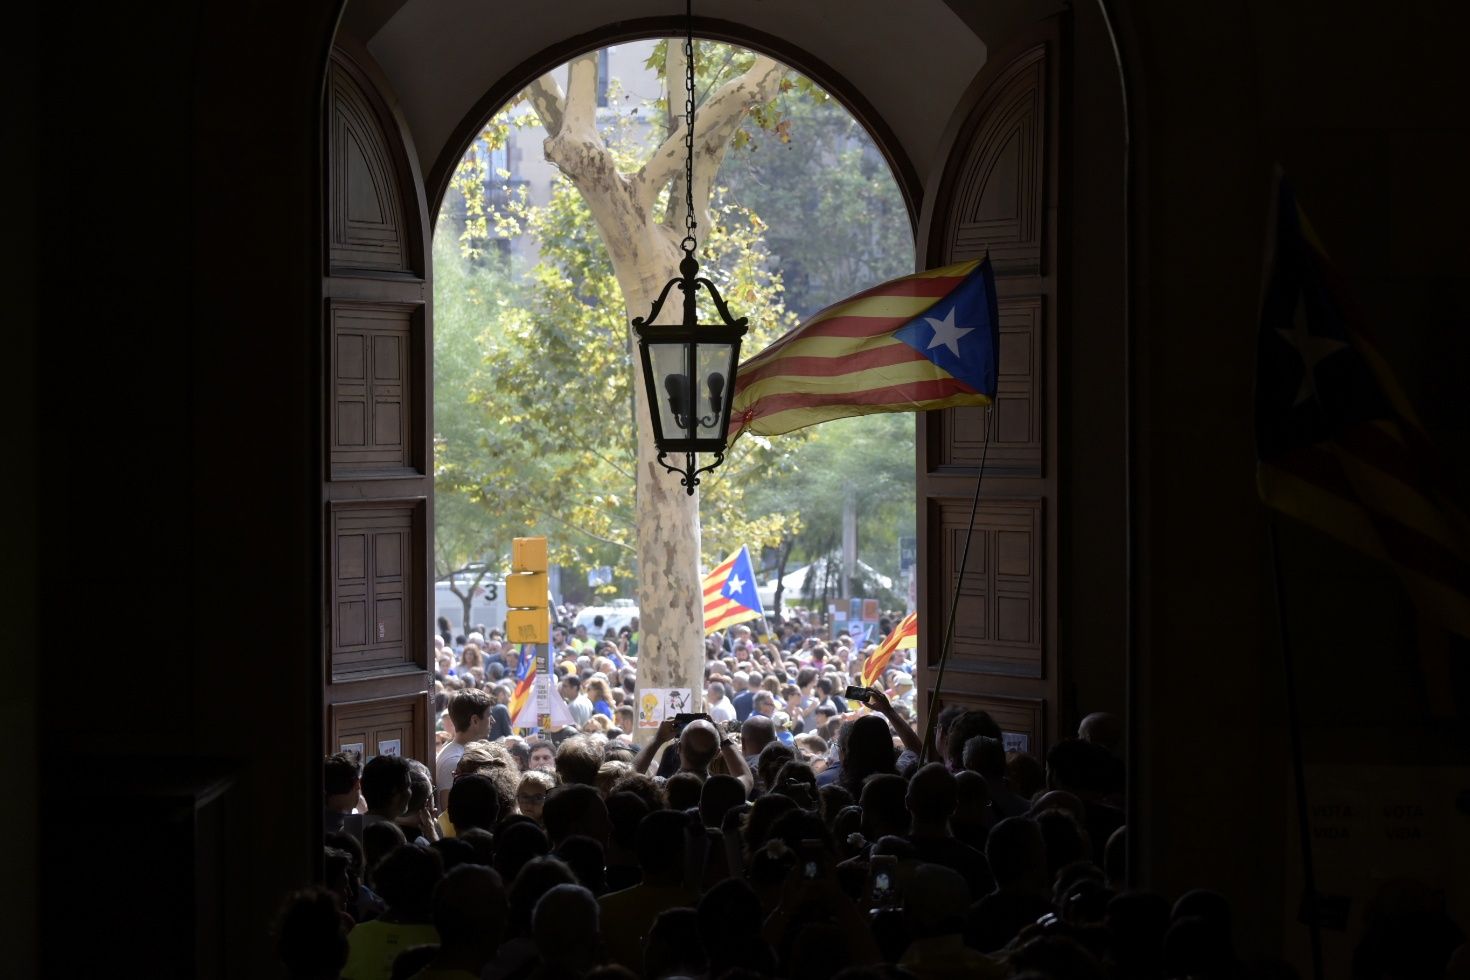 Intelectuales de referencia global apoyan el 1-O y llaman a España "Estado canalla"